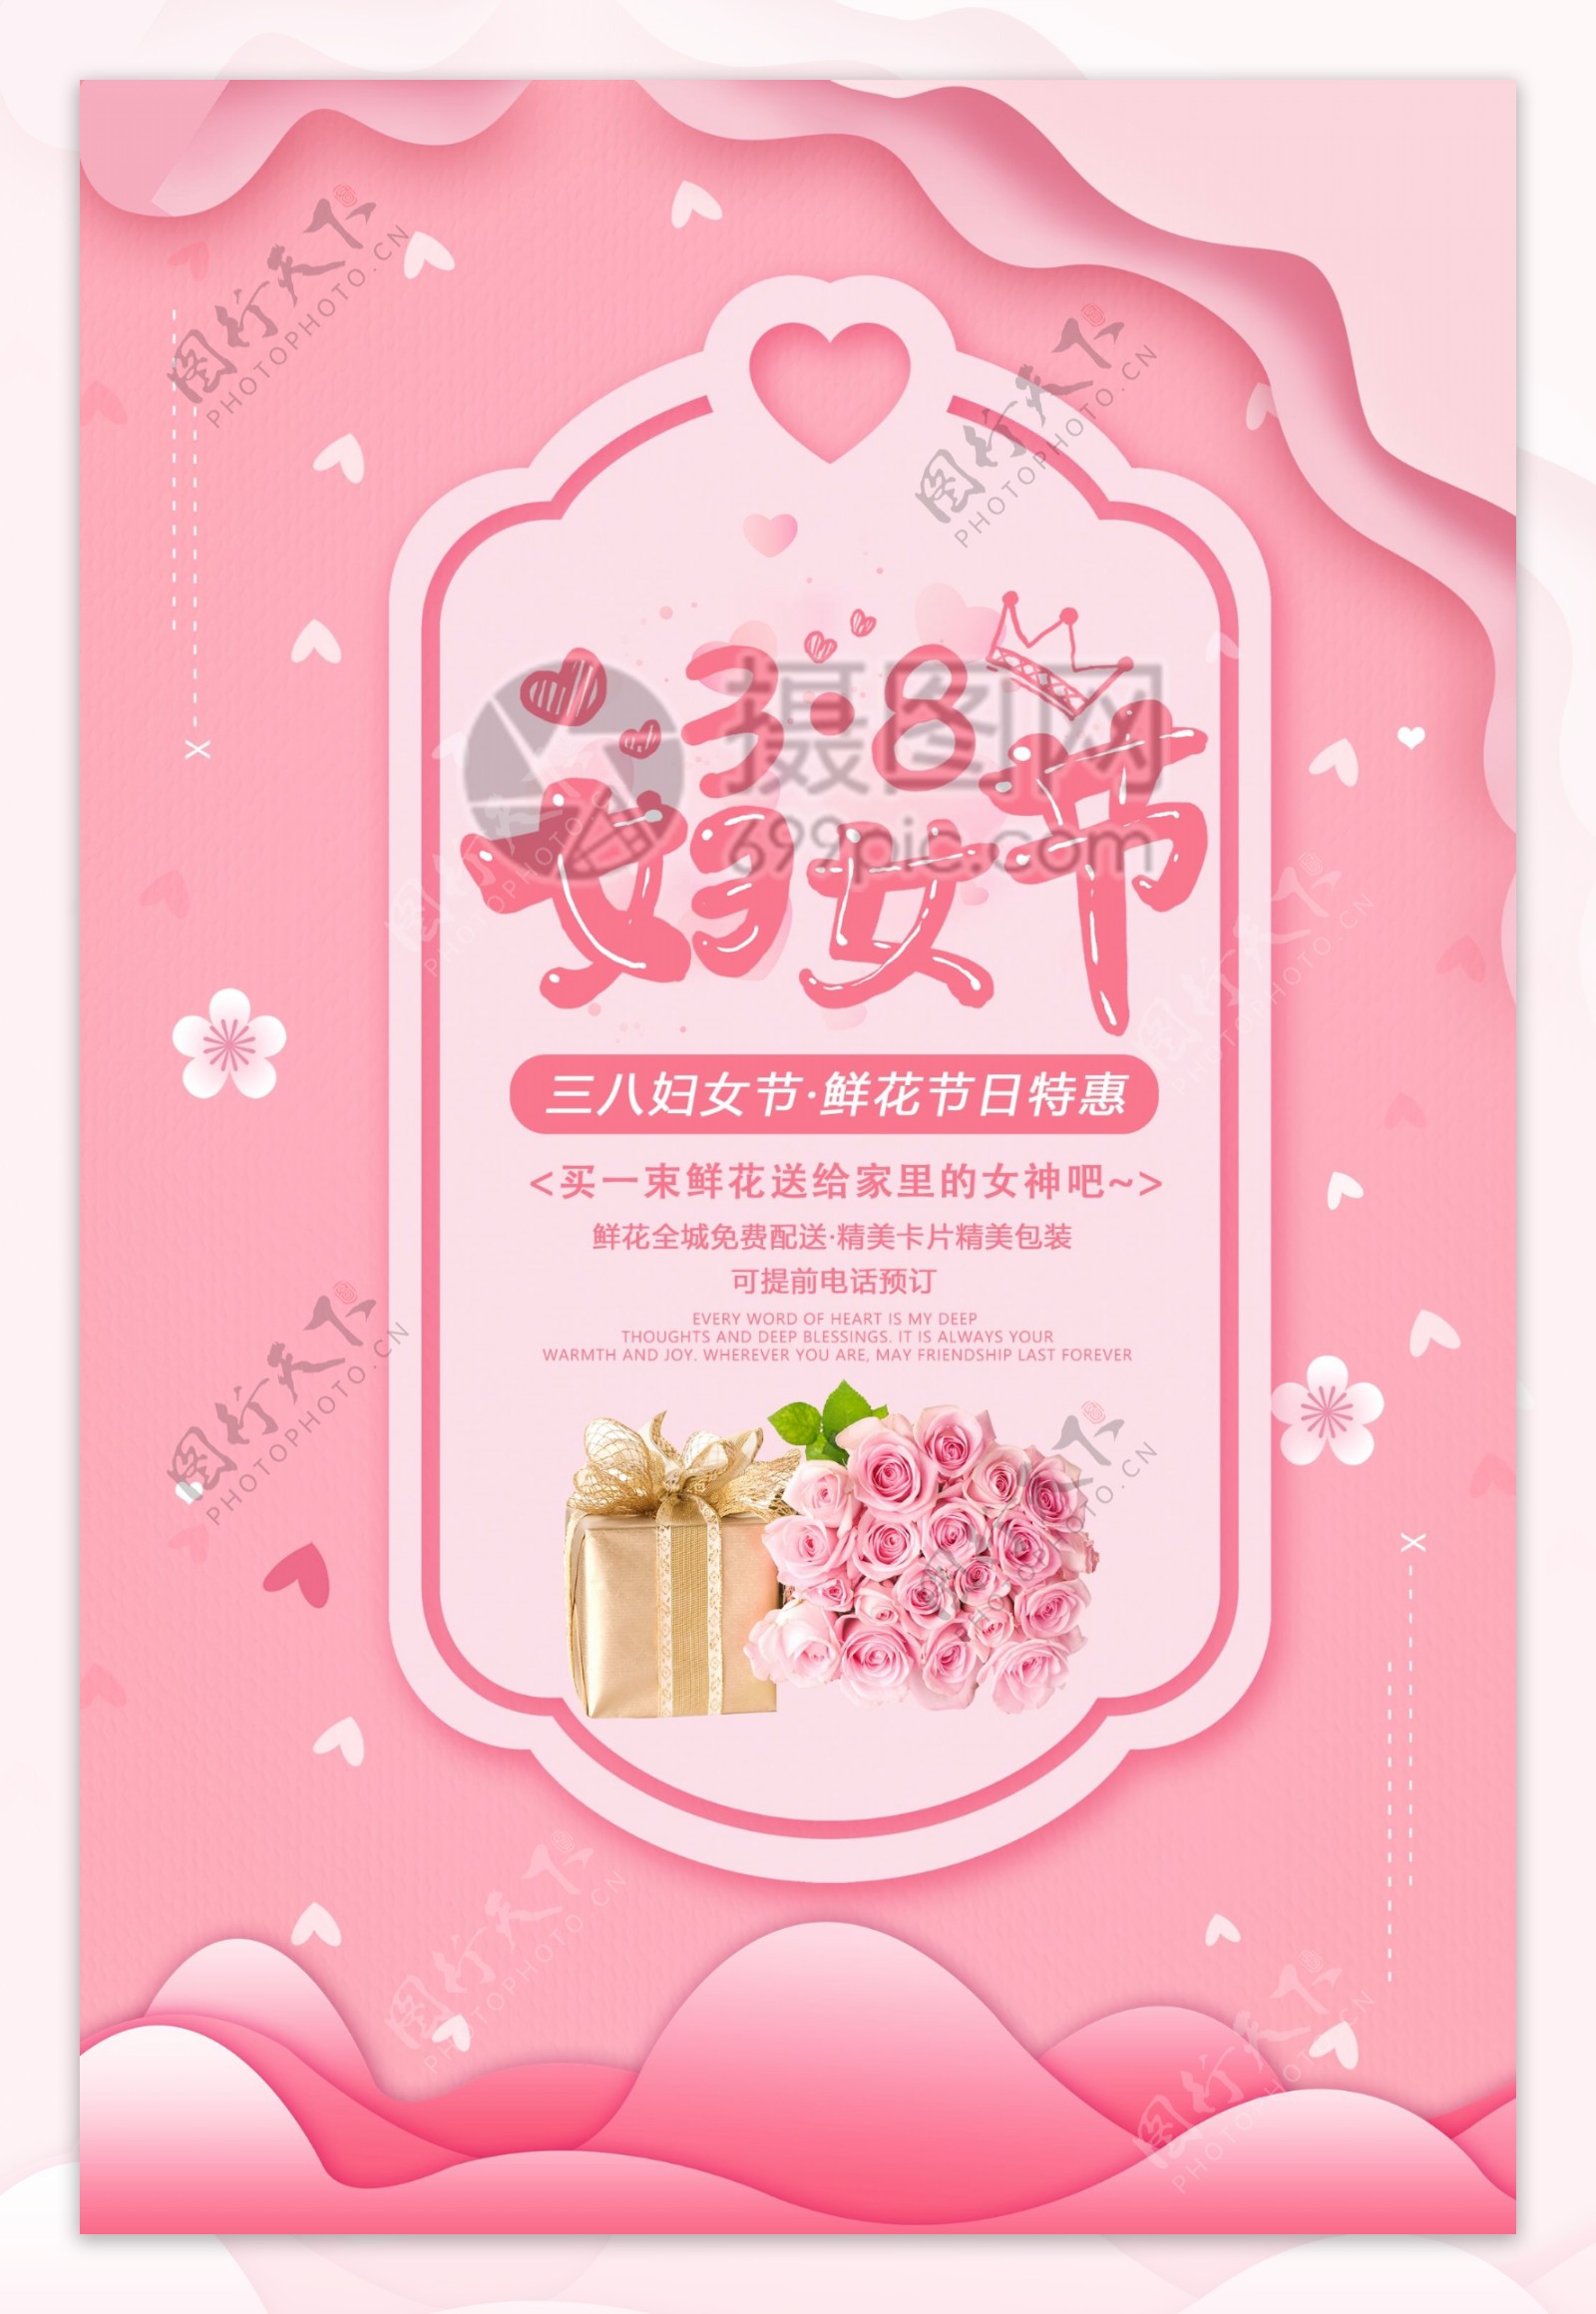 清新唯美3.8妇女节节日促销海报